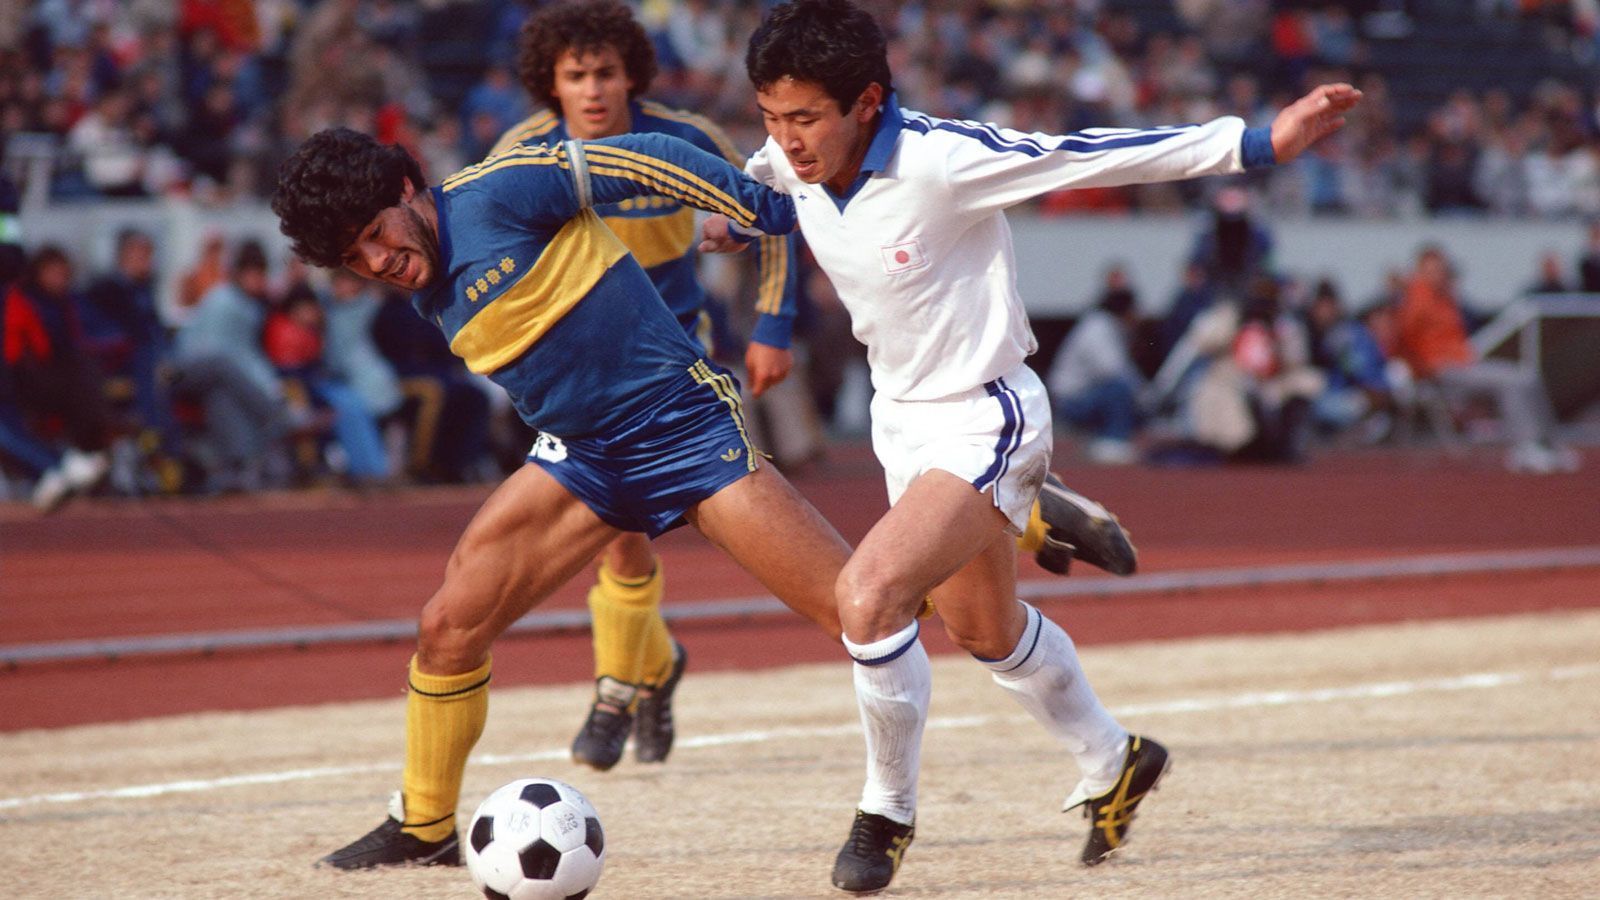 
                <strong>Held bei den Boca Juniors</strong><br>
                Maradona zog es zu den Boca Juniors, wo er in seiner Debüt-Saison zum dritten Mal in Folge als "Argentiniens Fußballer des Jahres" ausgezeichnet wurde. In 40 Ligaspielen erzielte er starke 28 Tore. Maradona galt als Nachfolger Peles und wurde inoffiziell zum besten Fußballer der Welt ernannt. Nach der WM 1982 zog es ihn nach Europa…
              